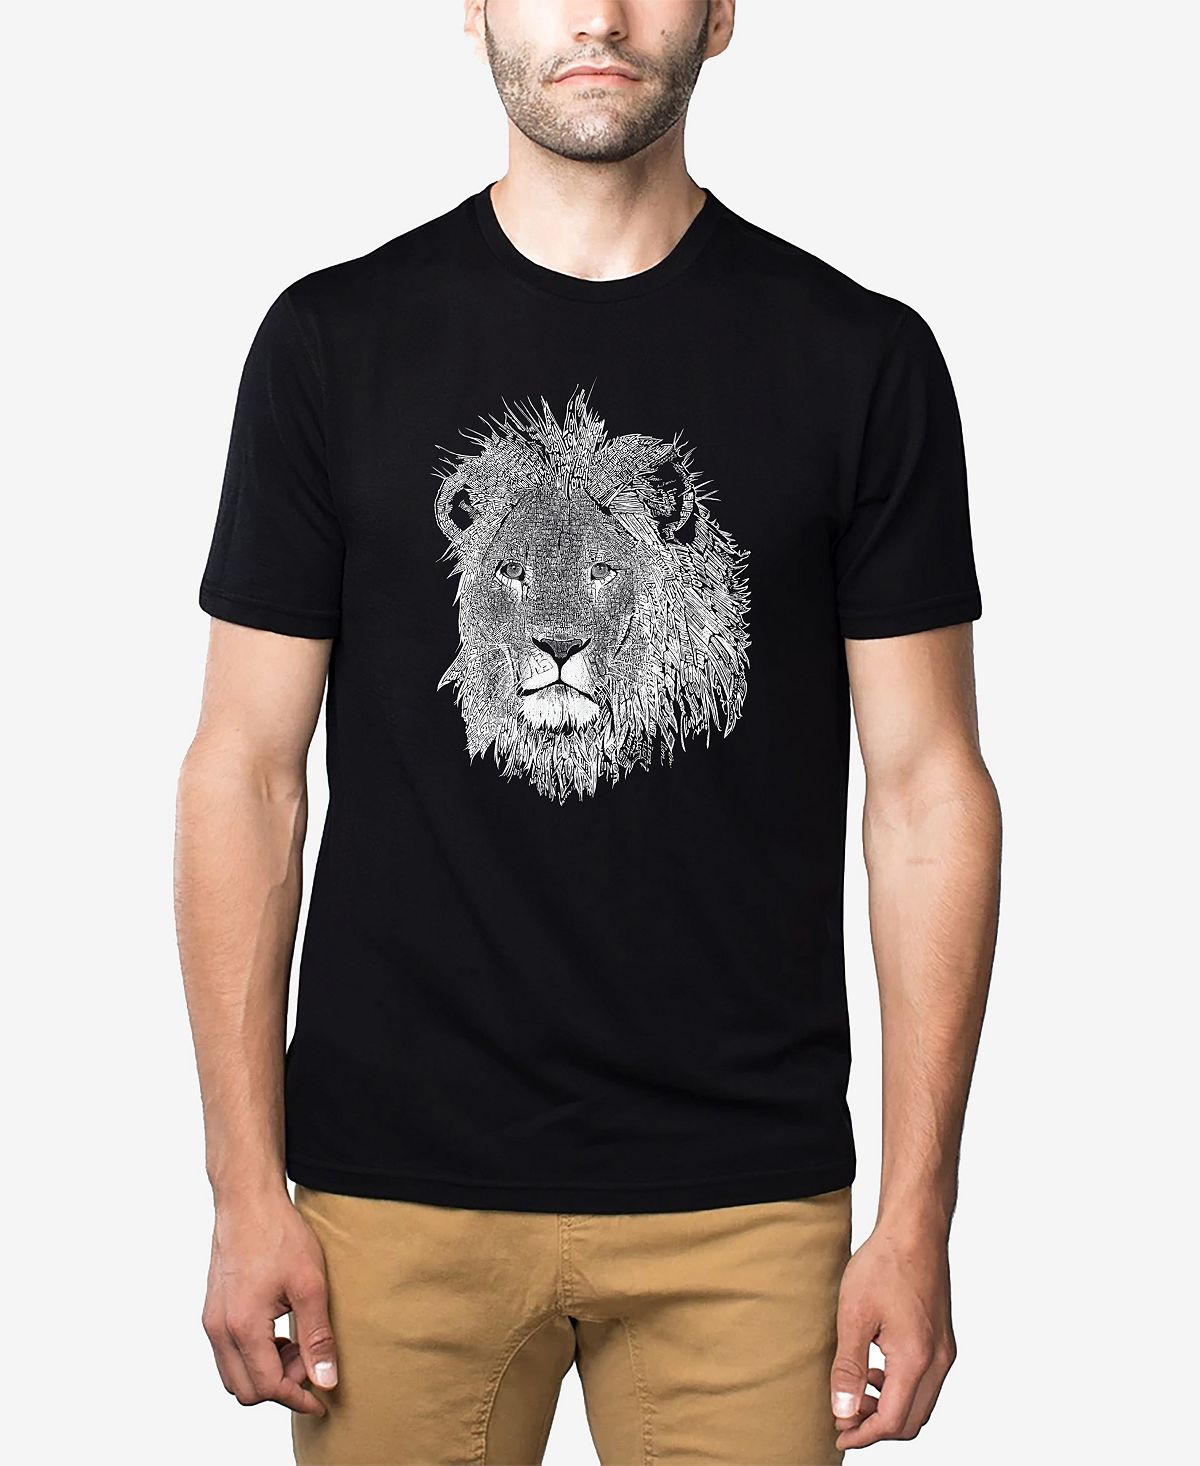 Мужская футболка premium blend word art lion LA Pop Art, черный